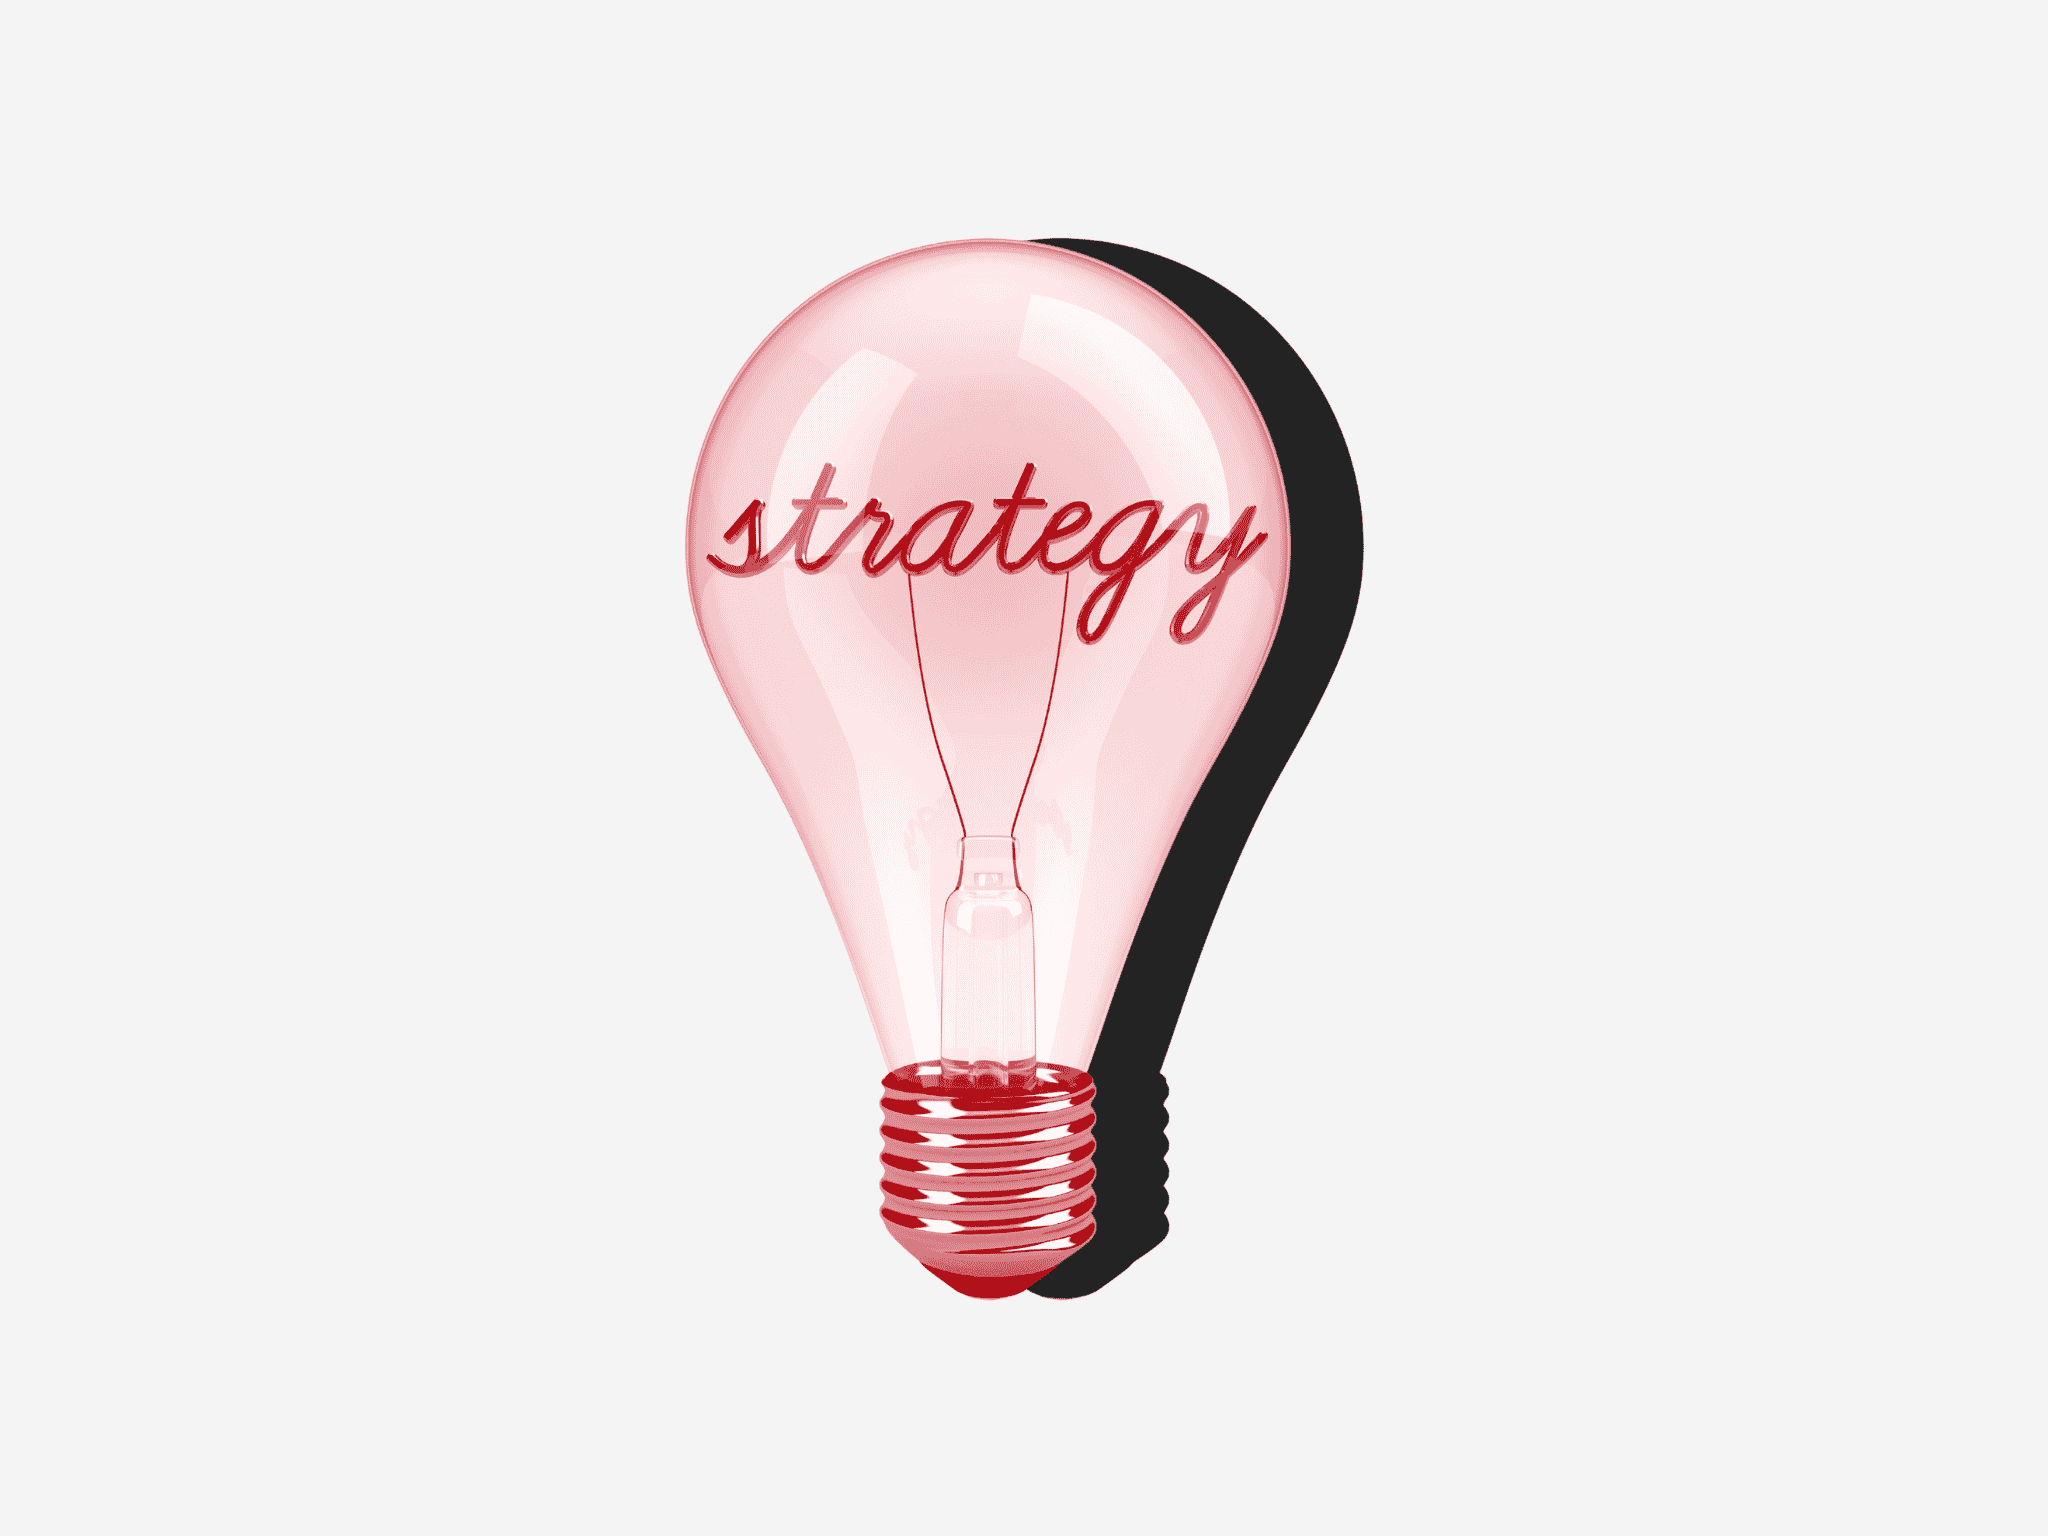 lampadina con la scritta strategy all'interno che ricorda il concetto di strategia per la customer retention